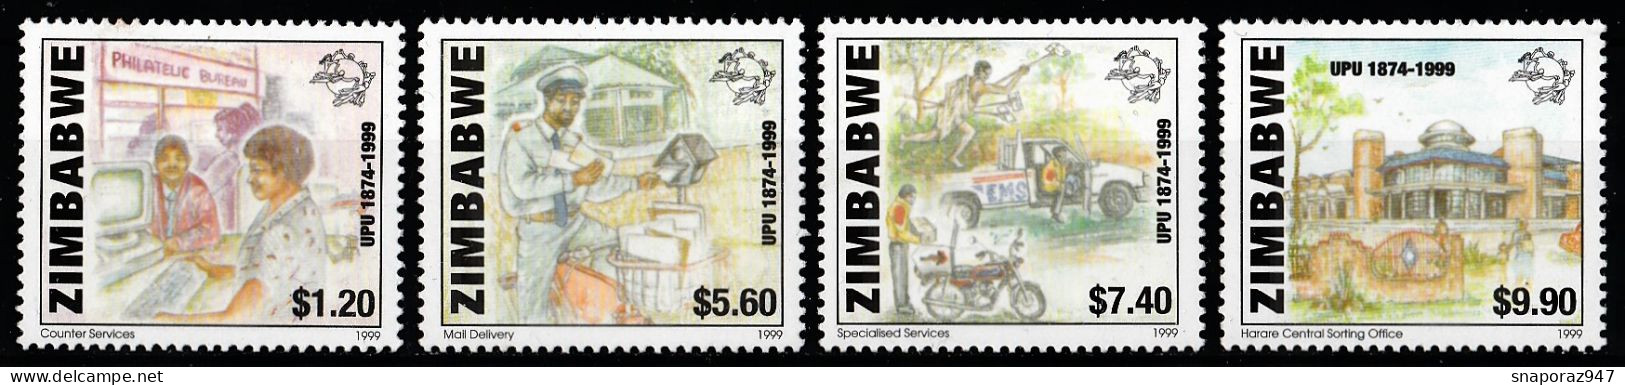 2000 Zimbabwe 125th UPU Set MNH** B578 - UPU (Universal Postal Union)